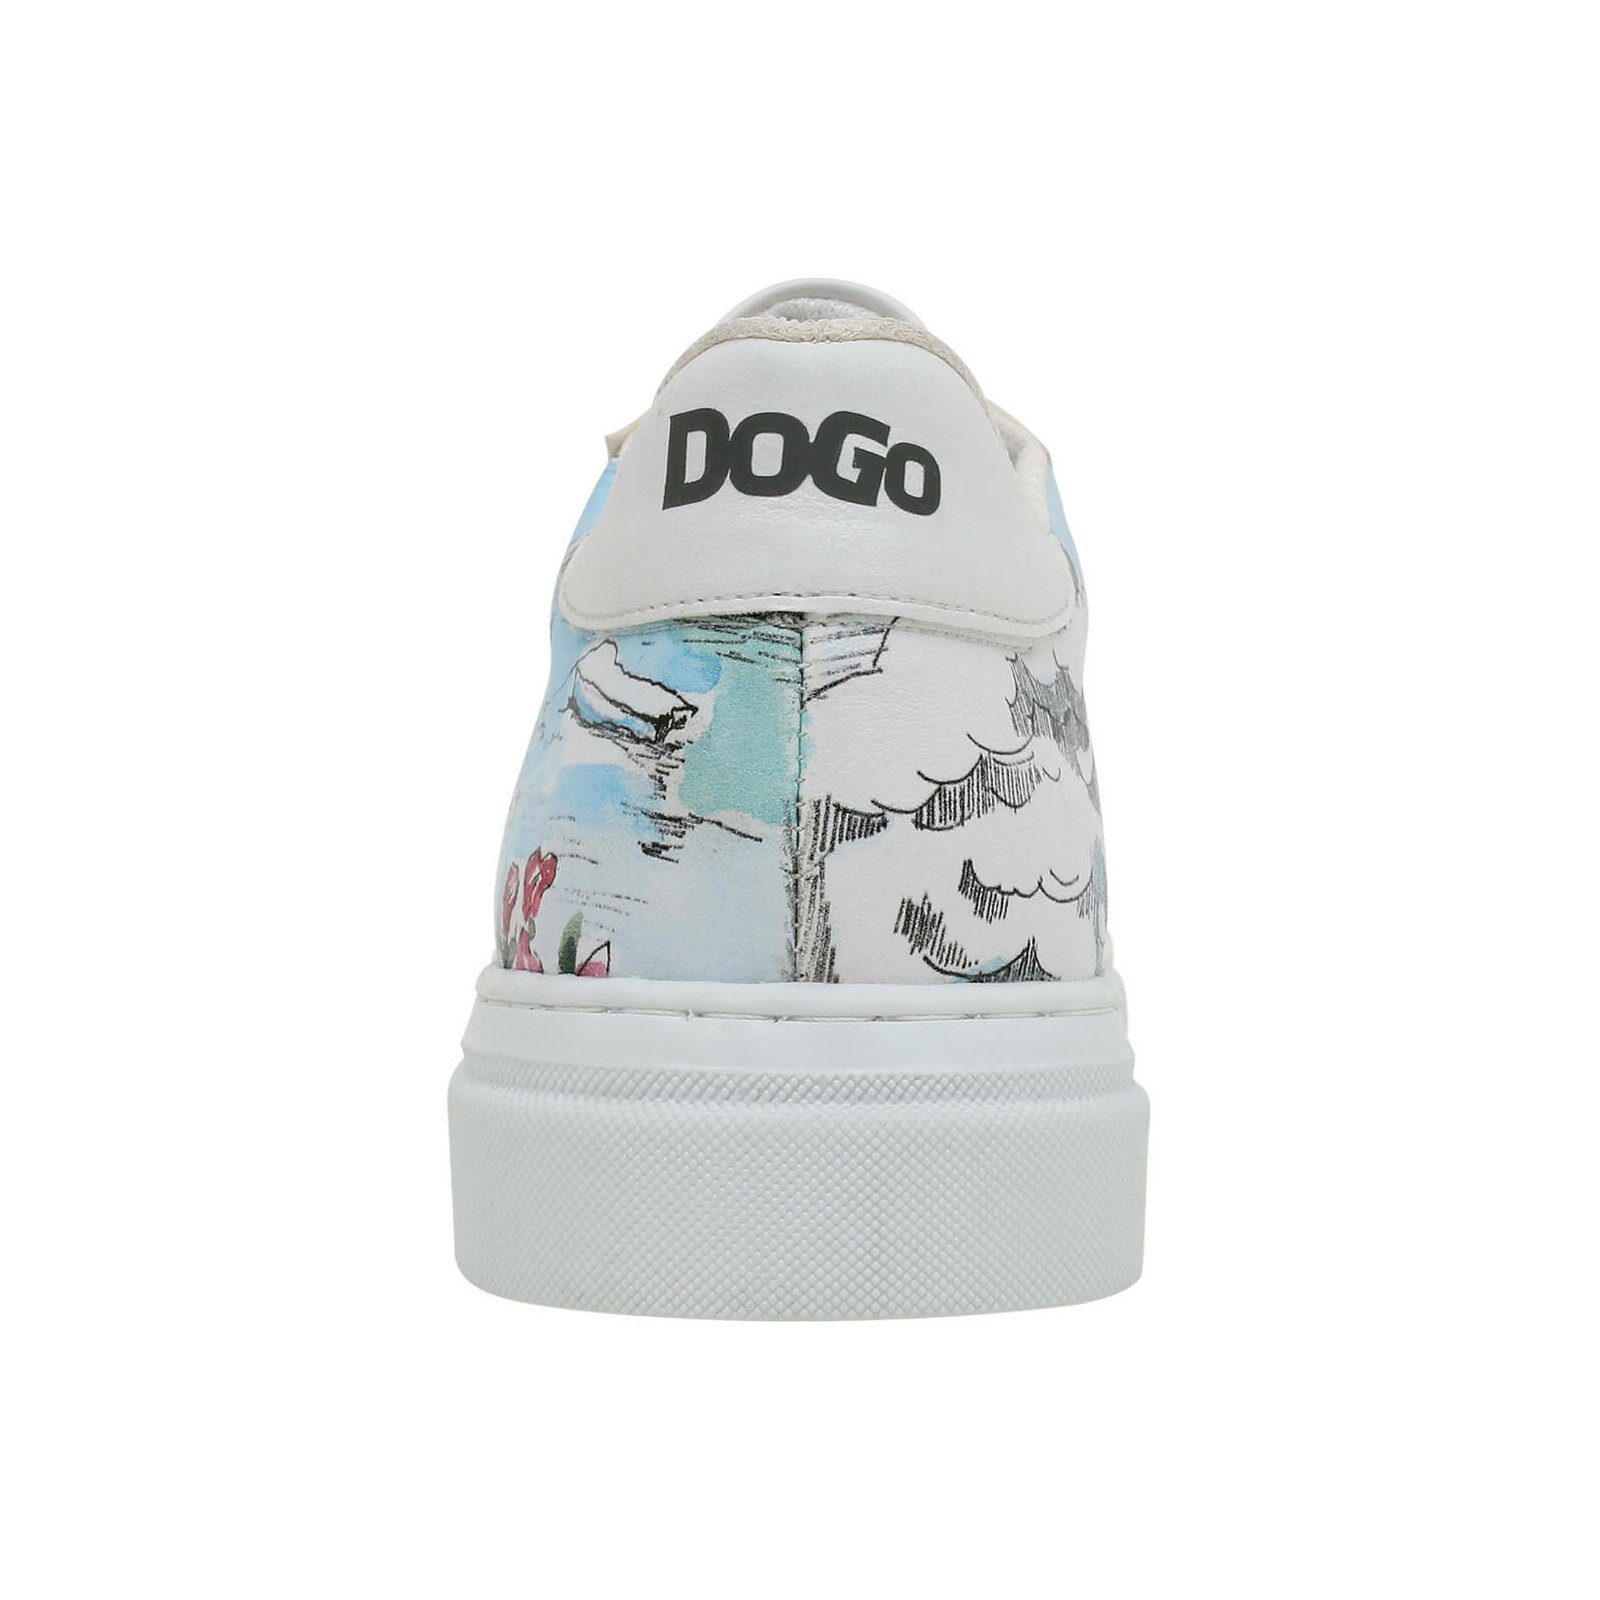 Schuhe Halbschuhe DOGO Lago di Como Schnürschuh Vegan